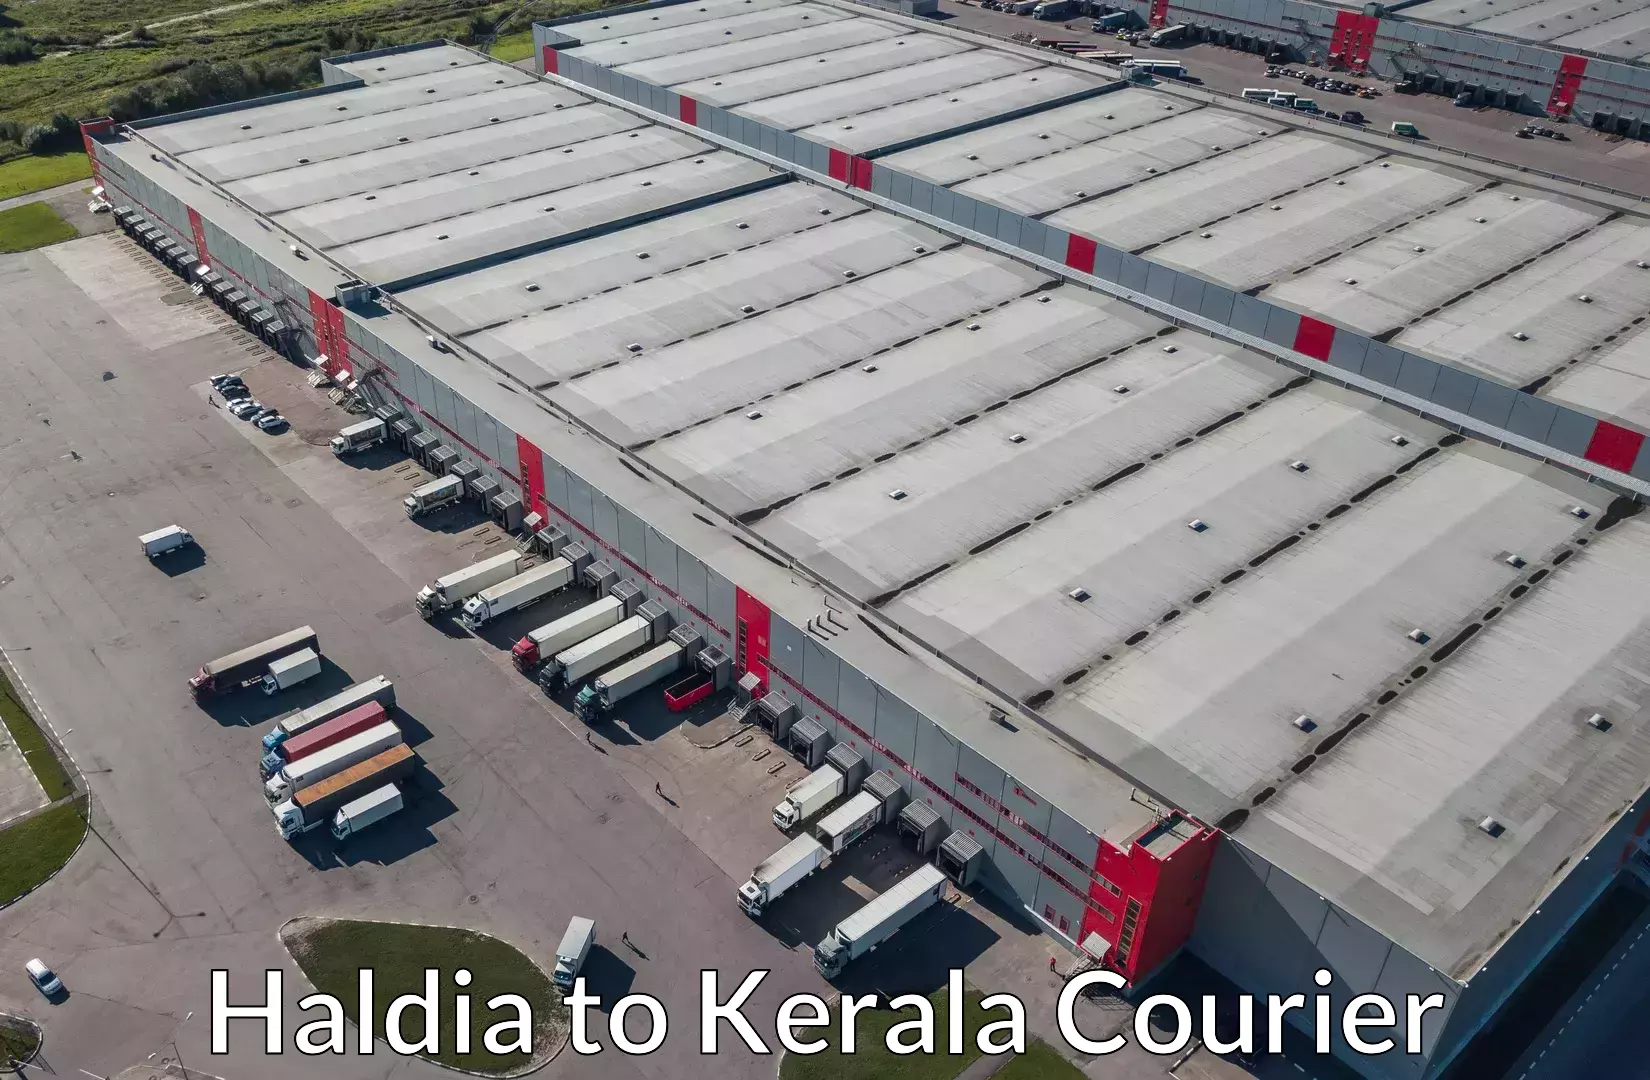 Hassle-free luggage shipping in Haldia to Kerala